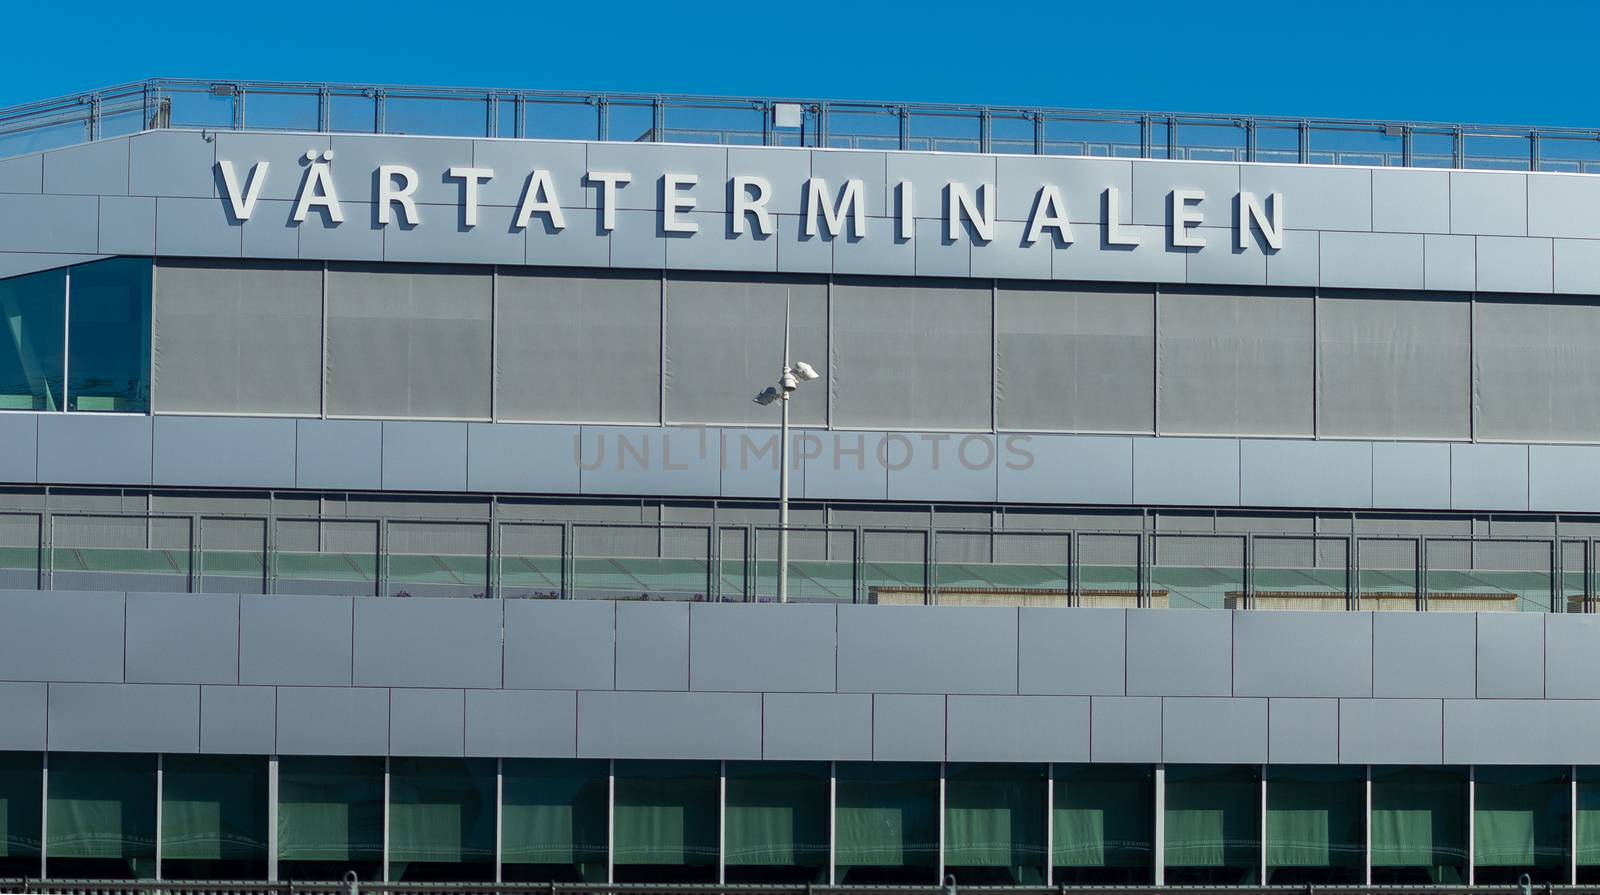 22 April 2019, Stockholm, Sweden. Passenger terminal in the port Vartahamnen in Stockholm.